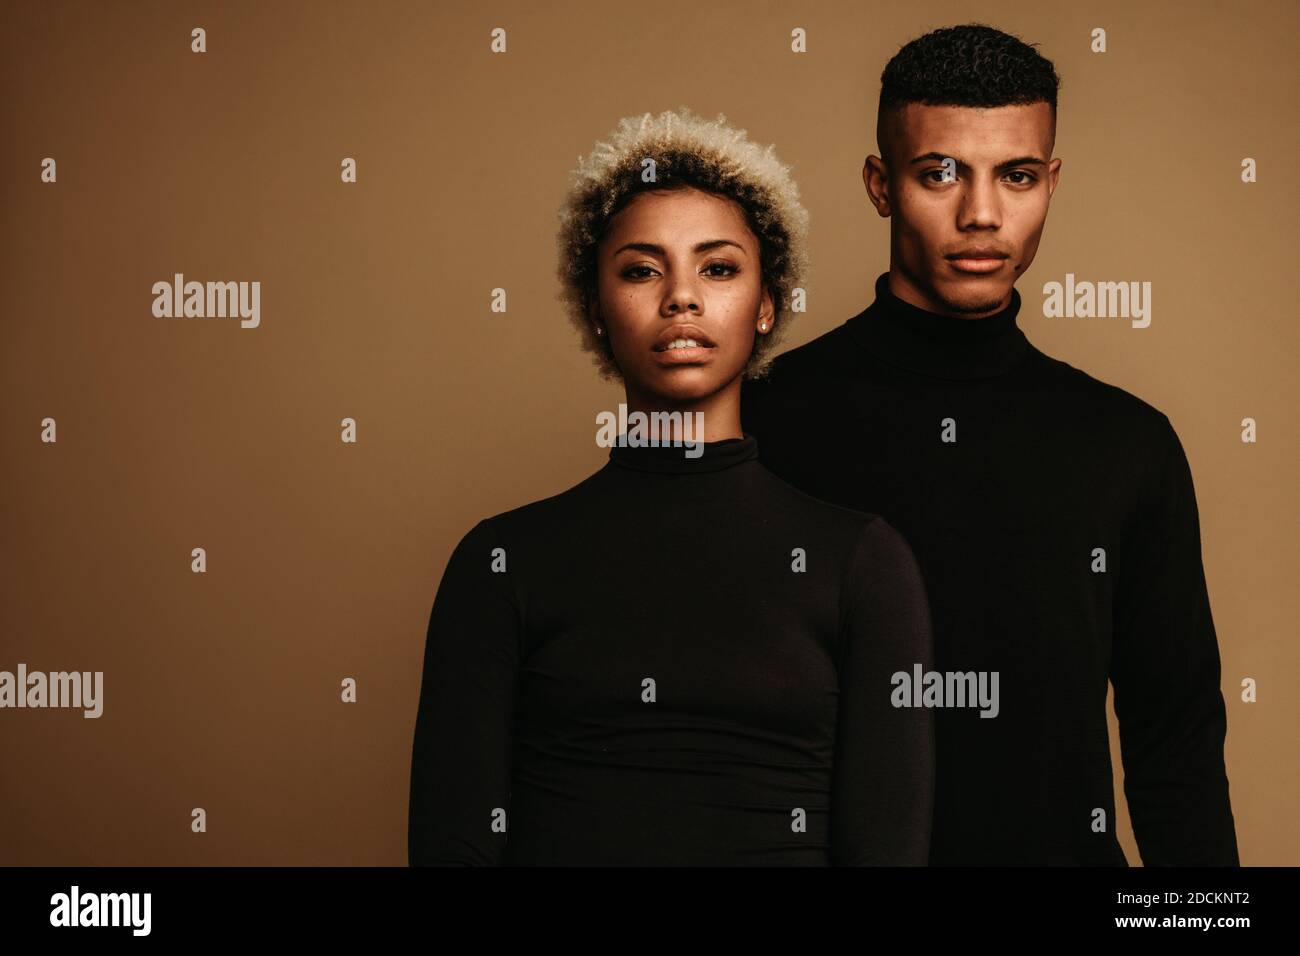 Paar auf braunem Hintergrund in schwarzer Kleidung. Porträt von afroamerikanischen Mann und Frau. Stockfoto